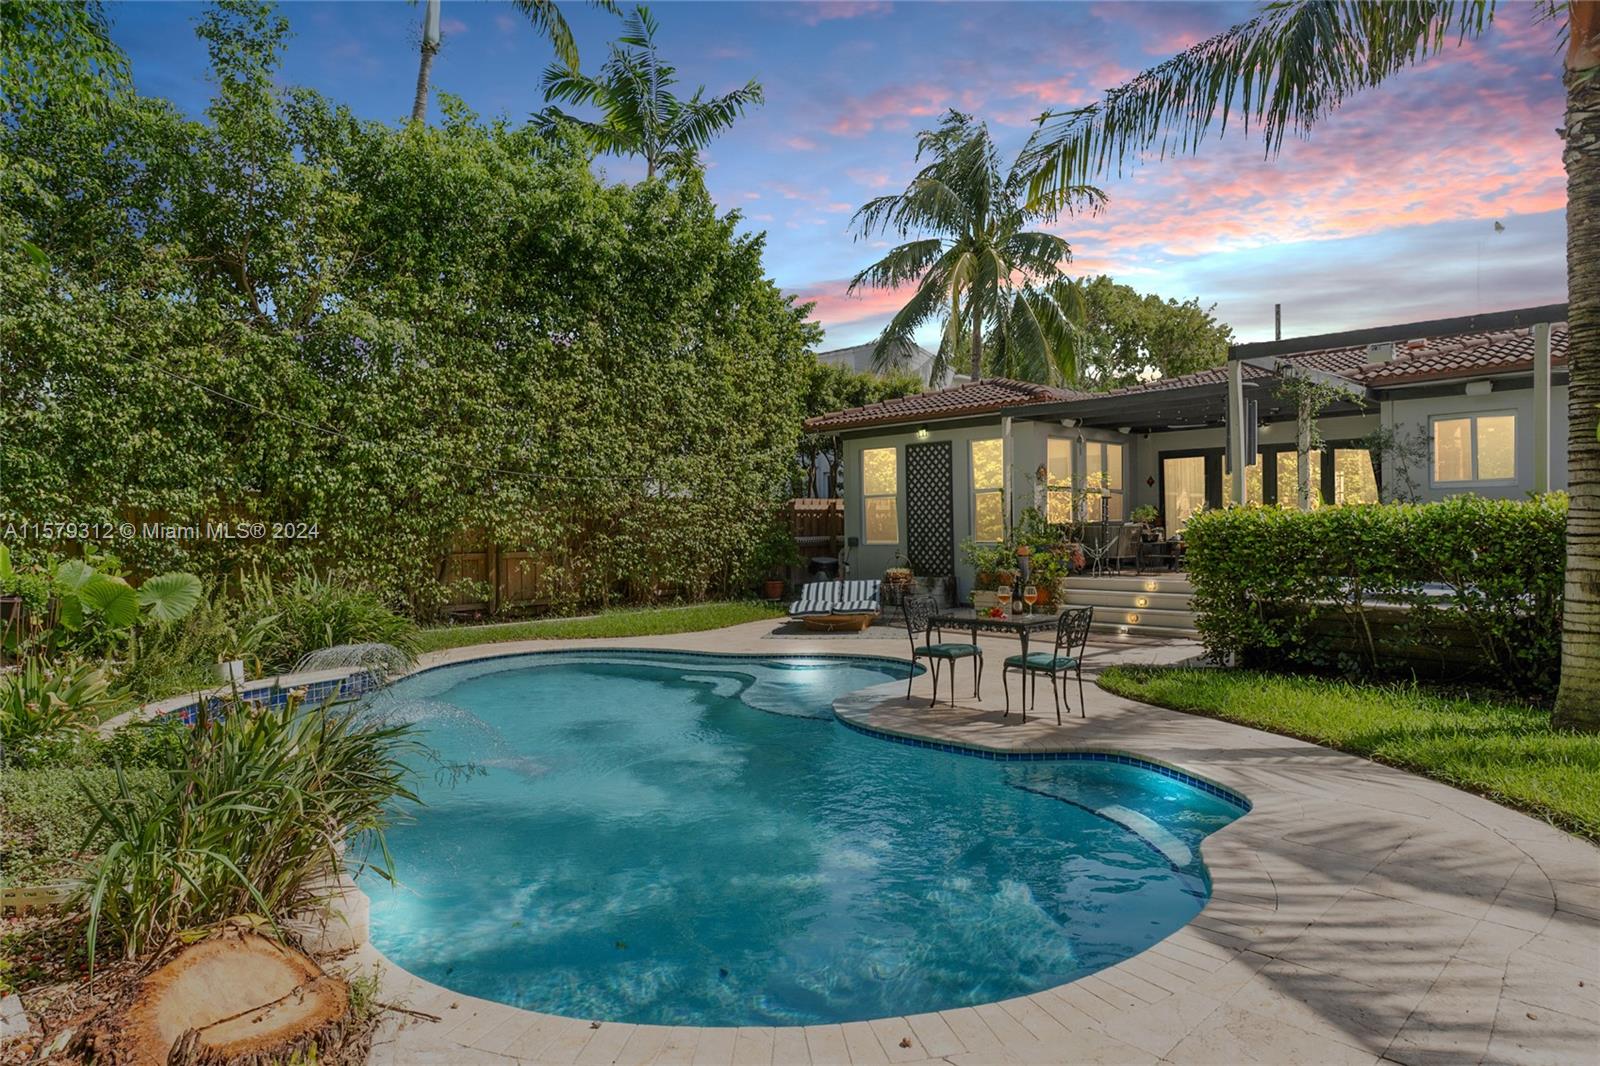 Property for Sale at 5314 Alton Rd Rd, Miami Beach, Miami-Dade County, Florida - Bedrooms: 4 
Bathrooms: 3  - $2,375,000